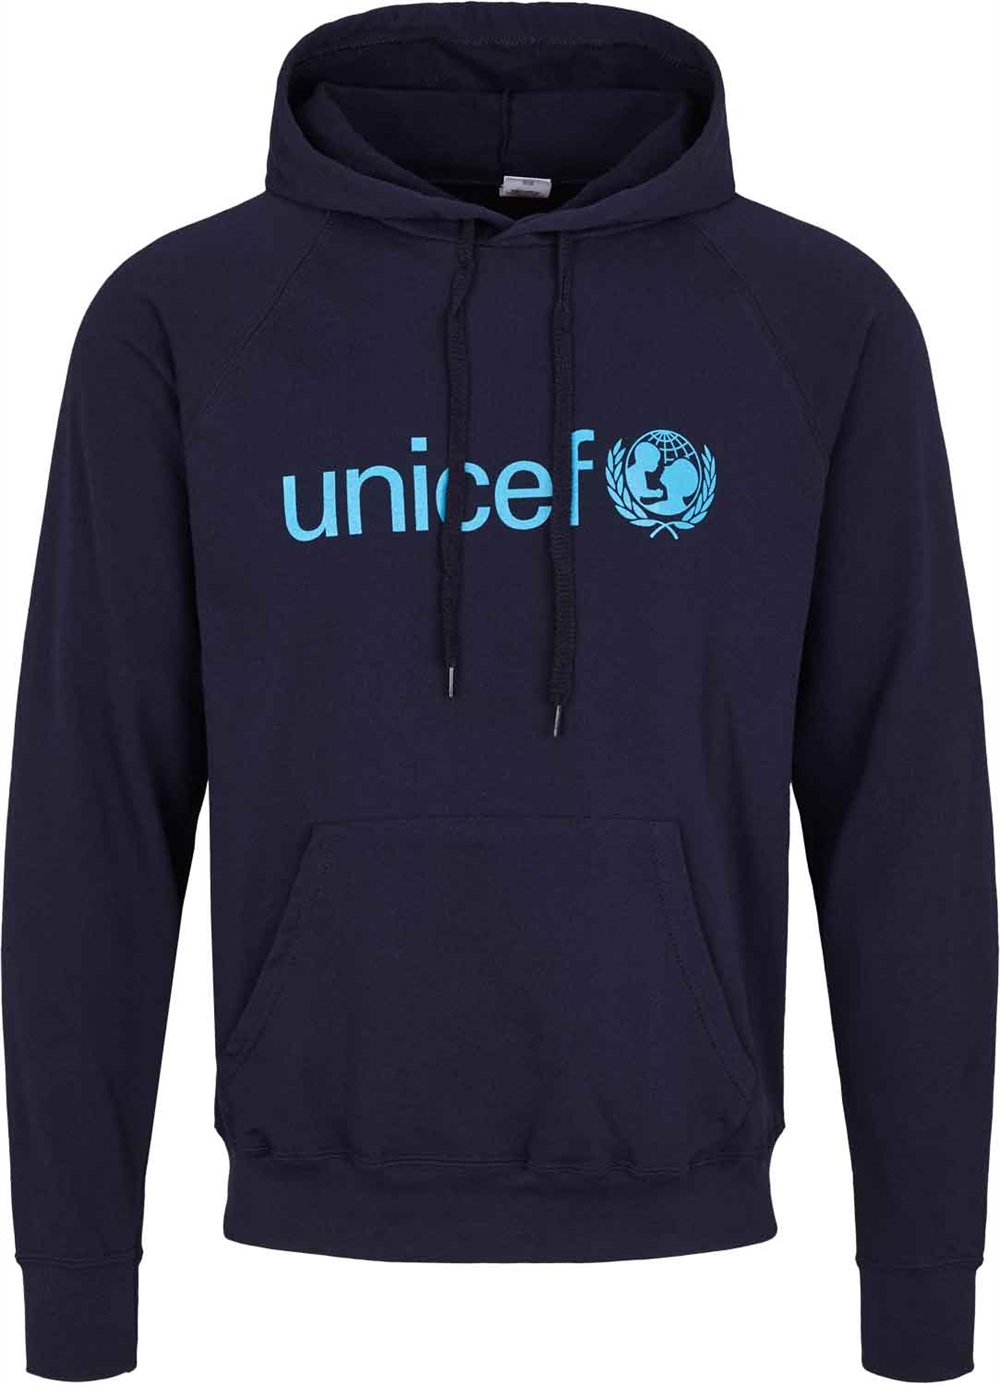 hul dis se tv Bestil en let UNICEF Hoodie i mørkeblå af 80% bomuld | UNICEF Danmark